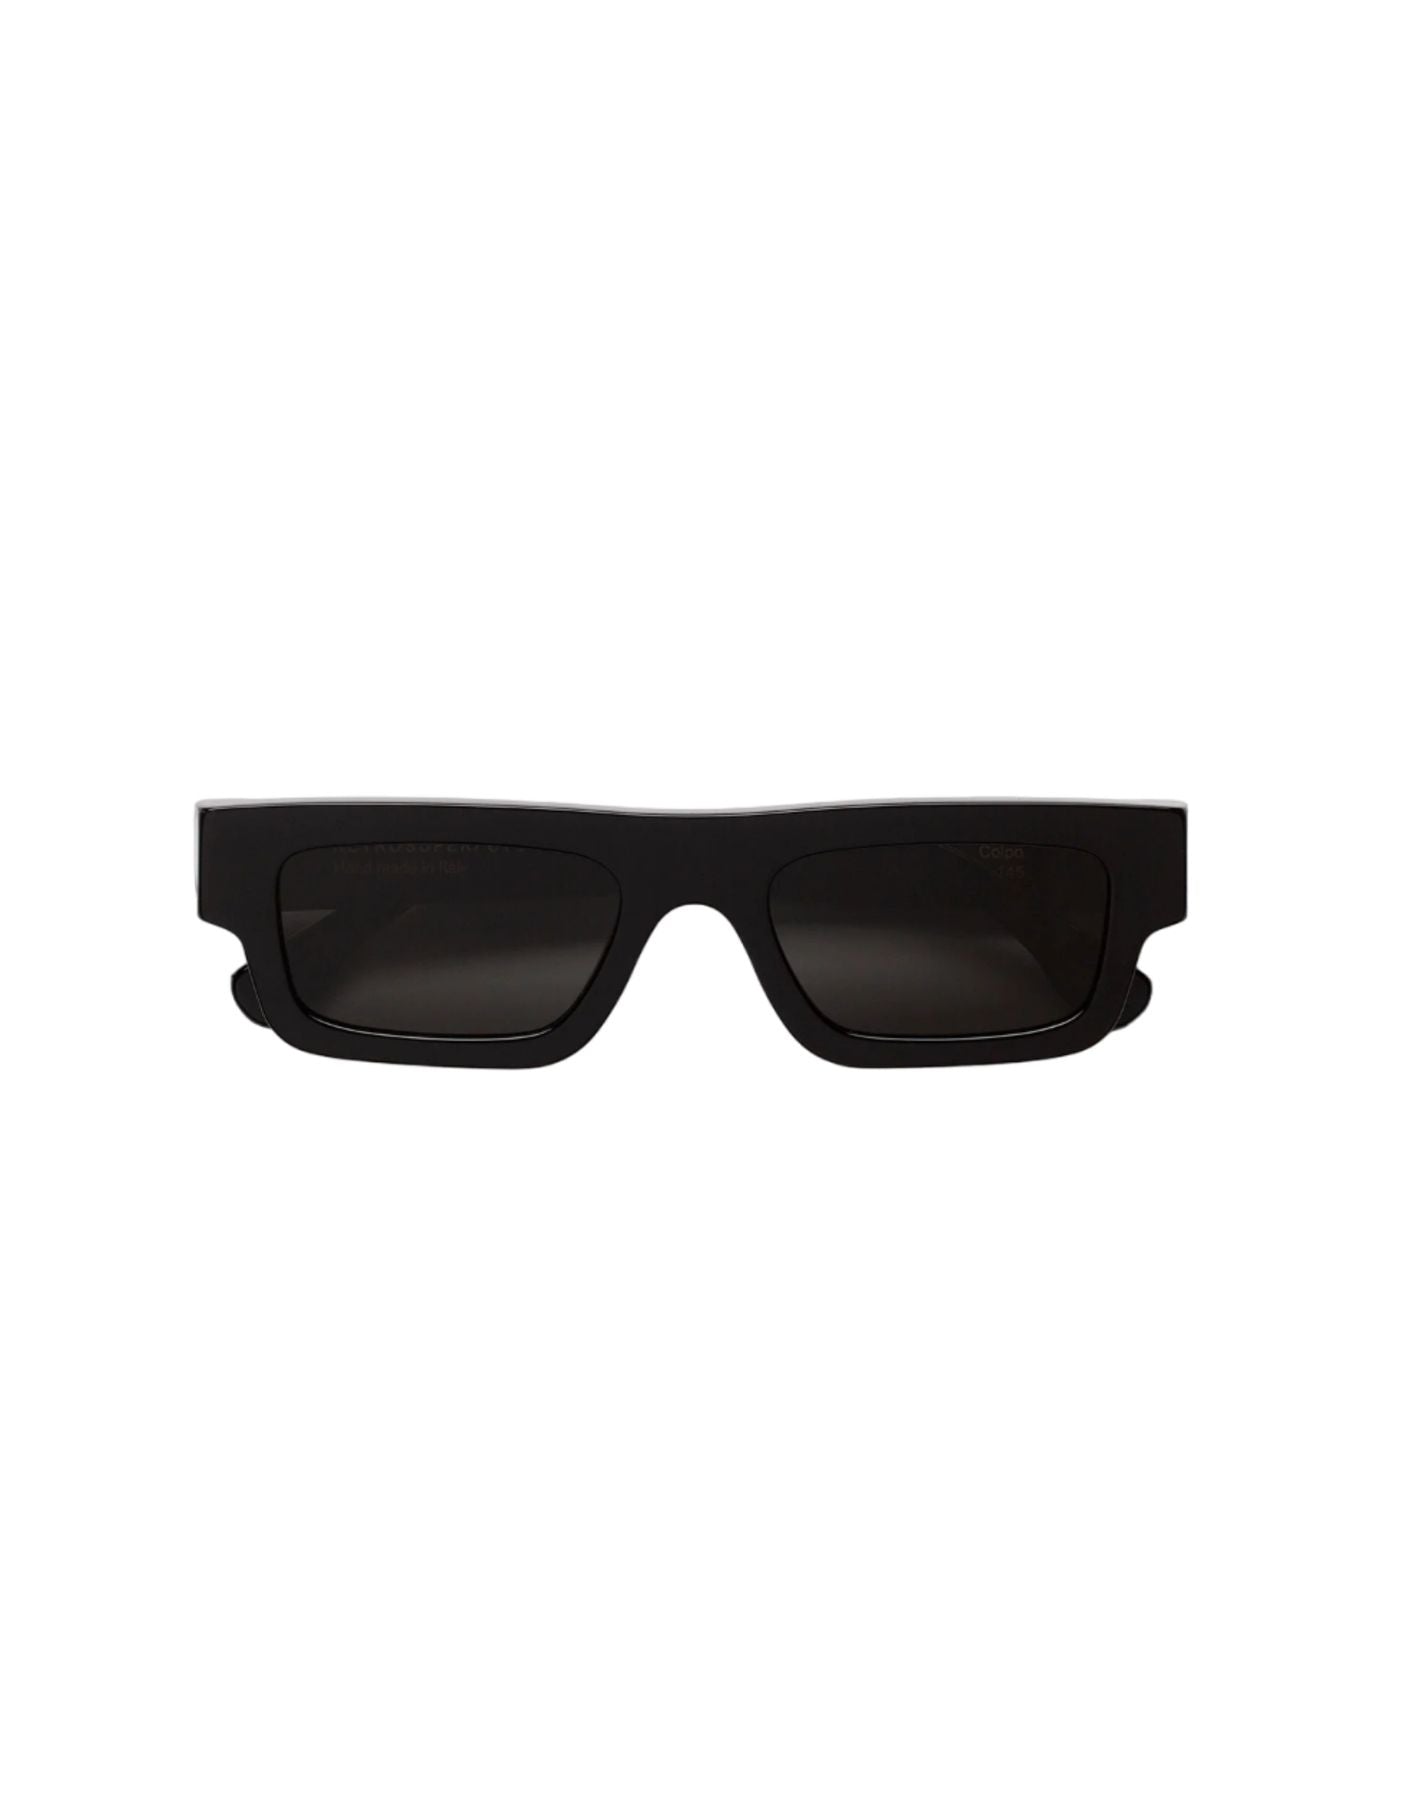 Sonnenbrille Unisex Colpo Black Zw5 RetroSuperFuture